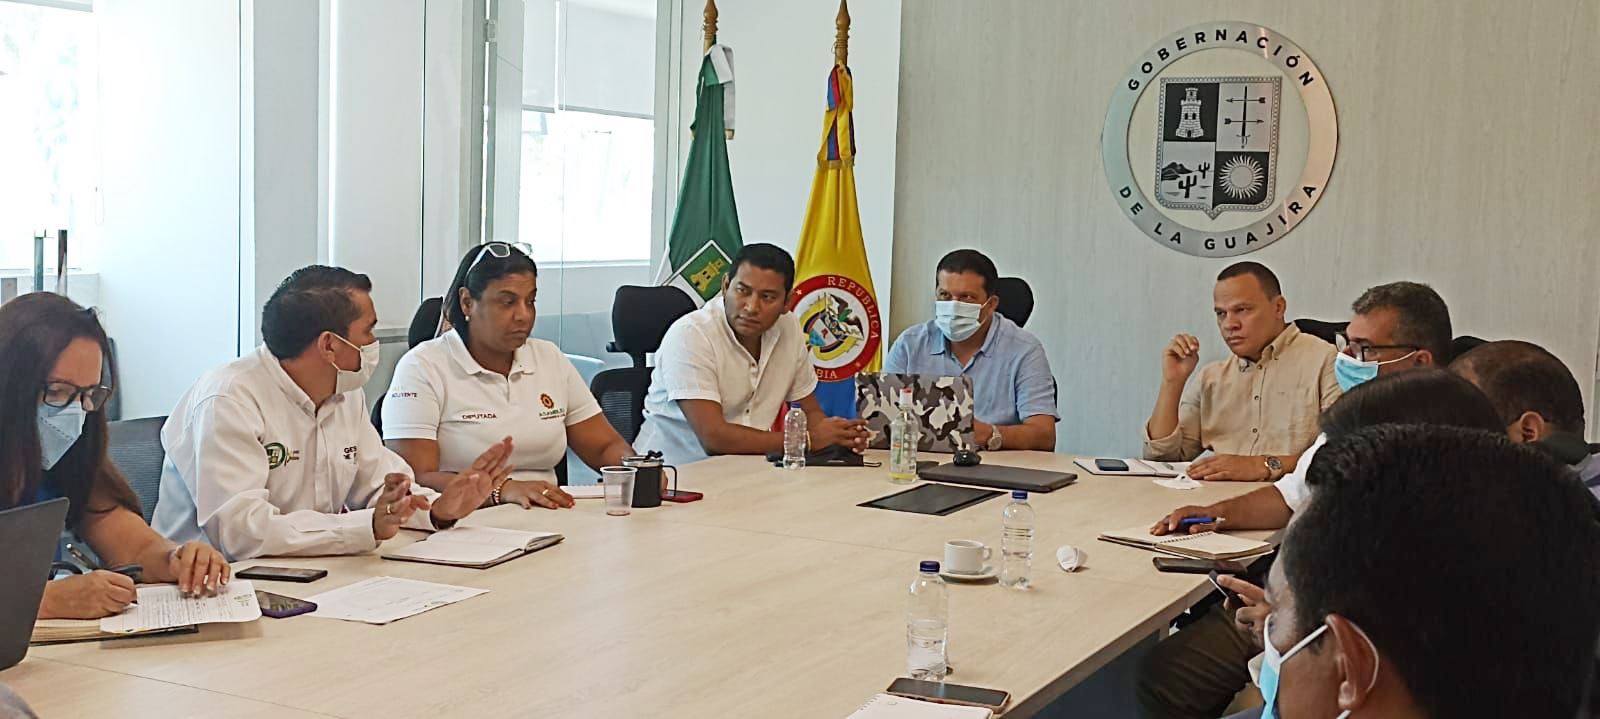 En la sala de juntas del Departamento, se ha venido trabajando para revolver las dificultades que existen en torno al estadio Hernando René Urrea Acosta, en el municipio de Maicao.